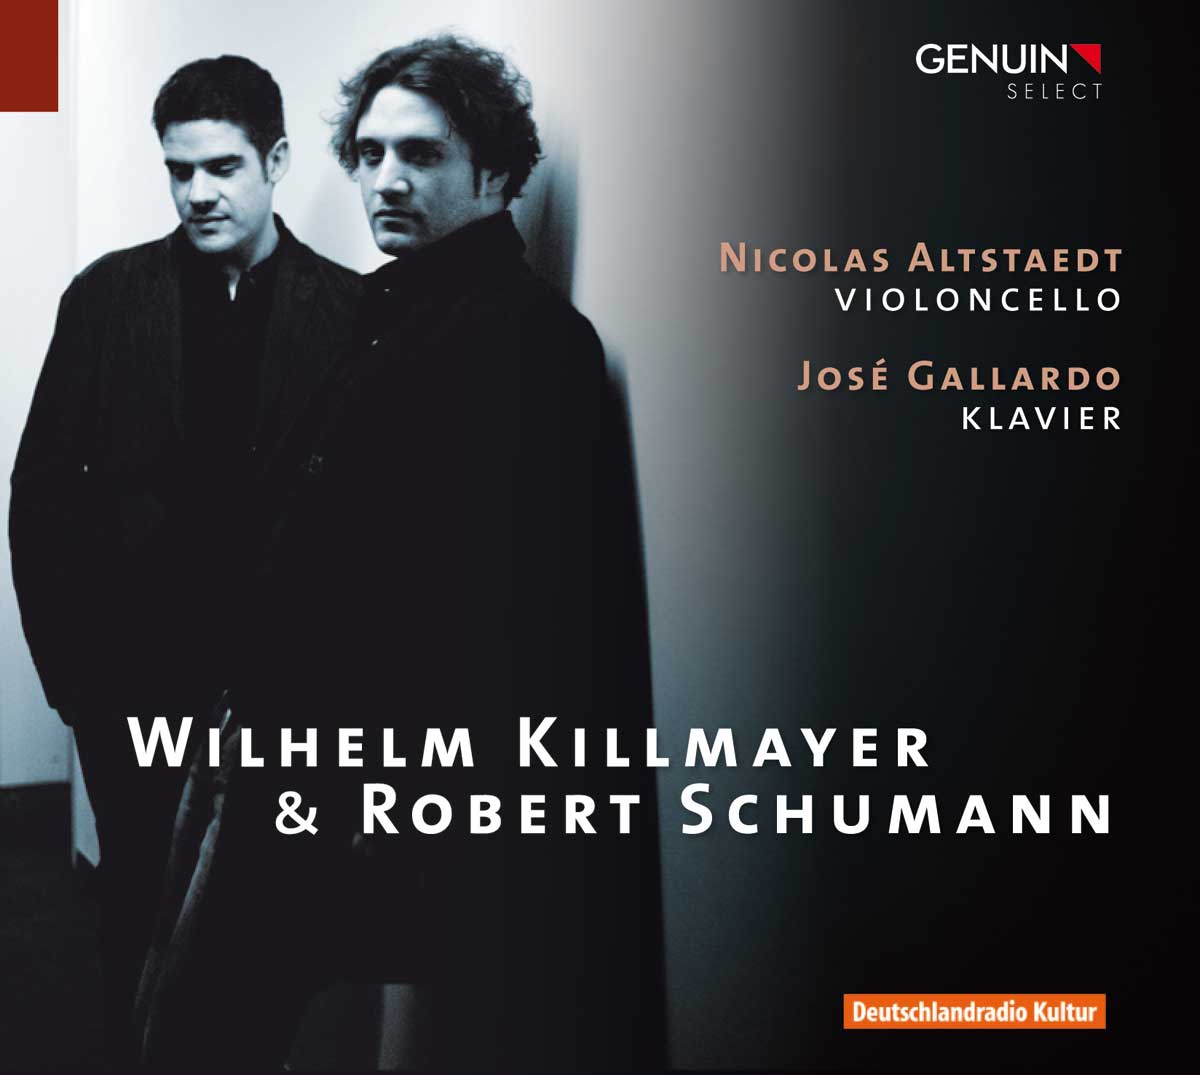 CD album cover 'Wilhelm Killmayer & Robert Schumann' (GEN 10187) with Nicolas Altstaedt, José Gallardo